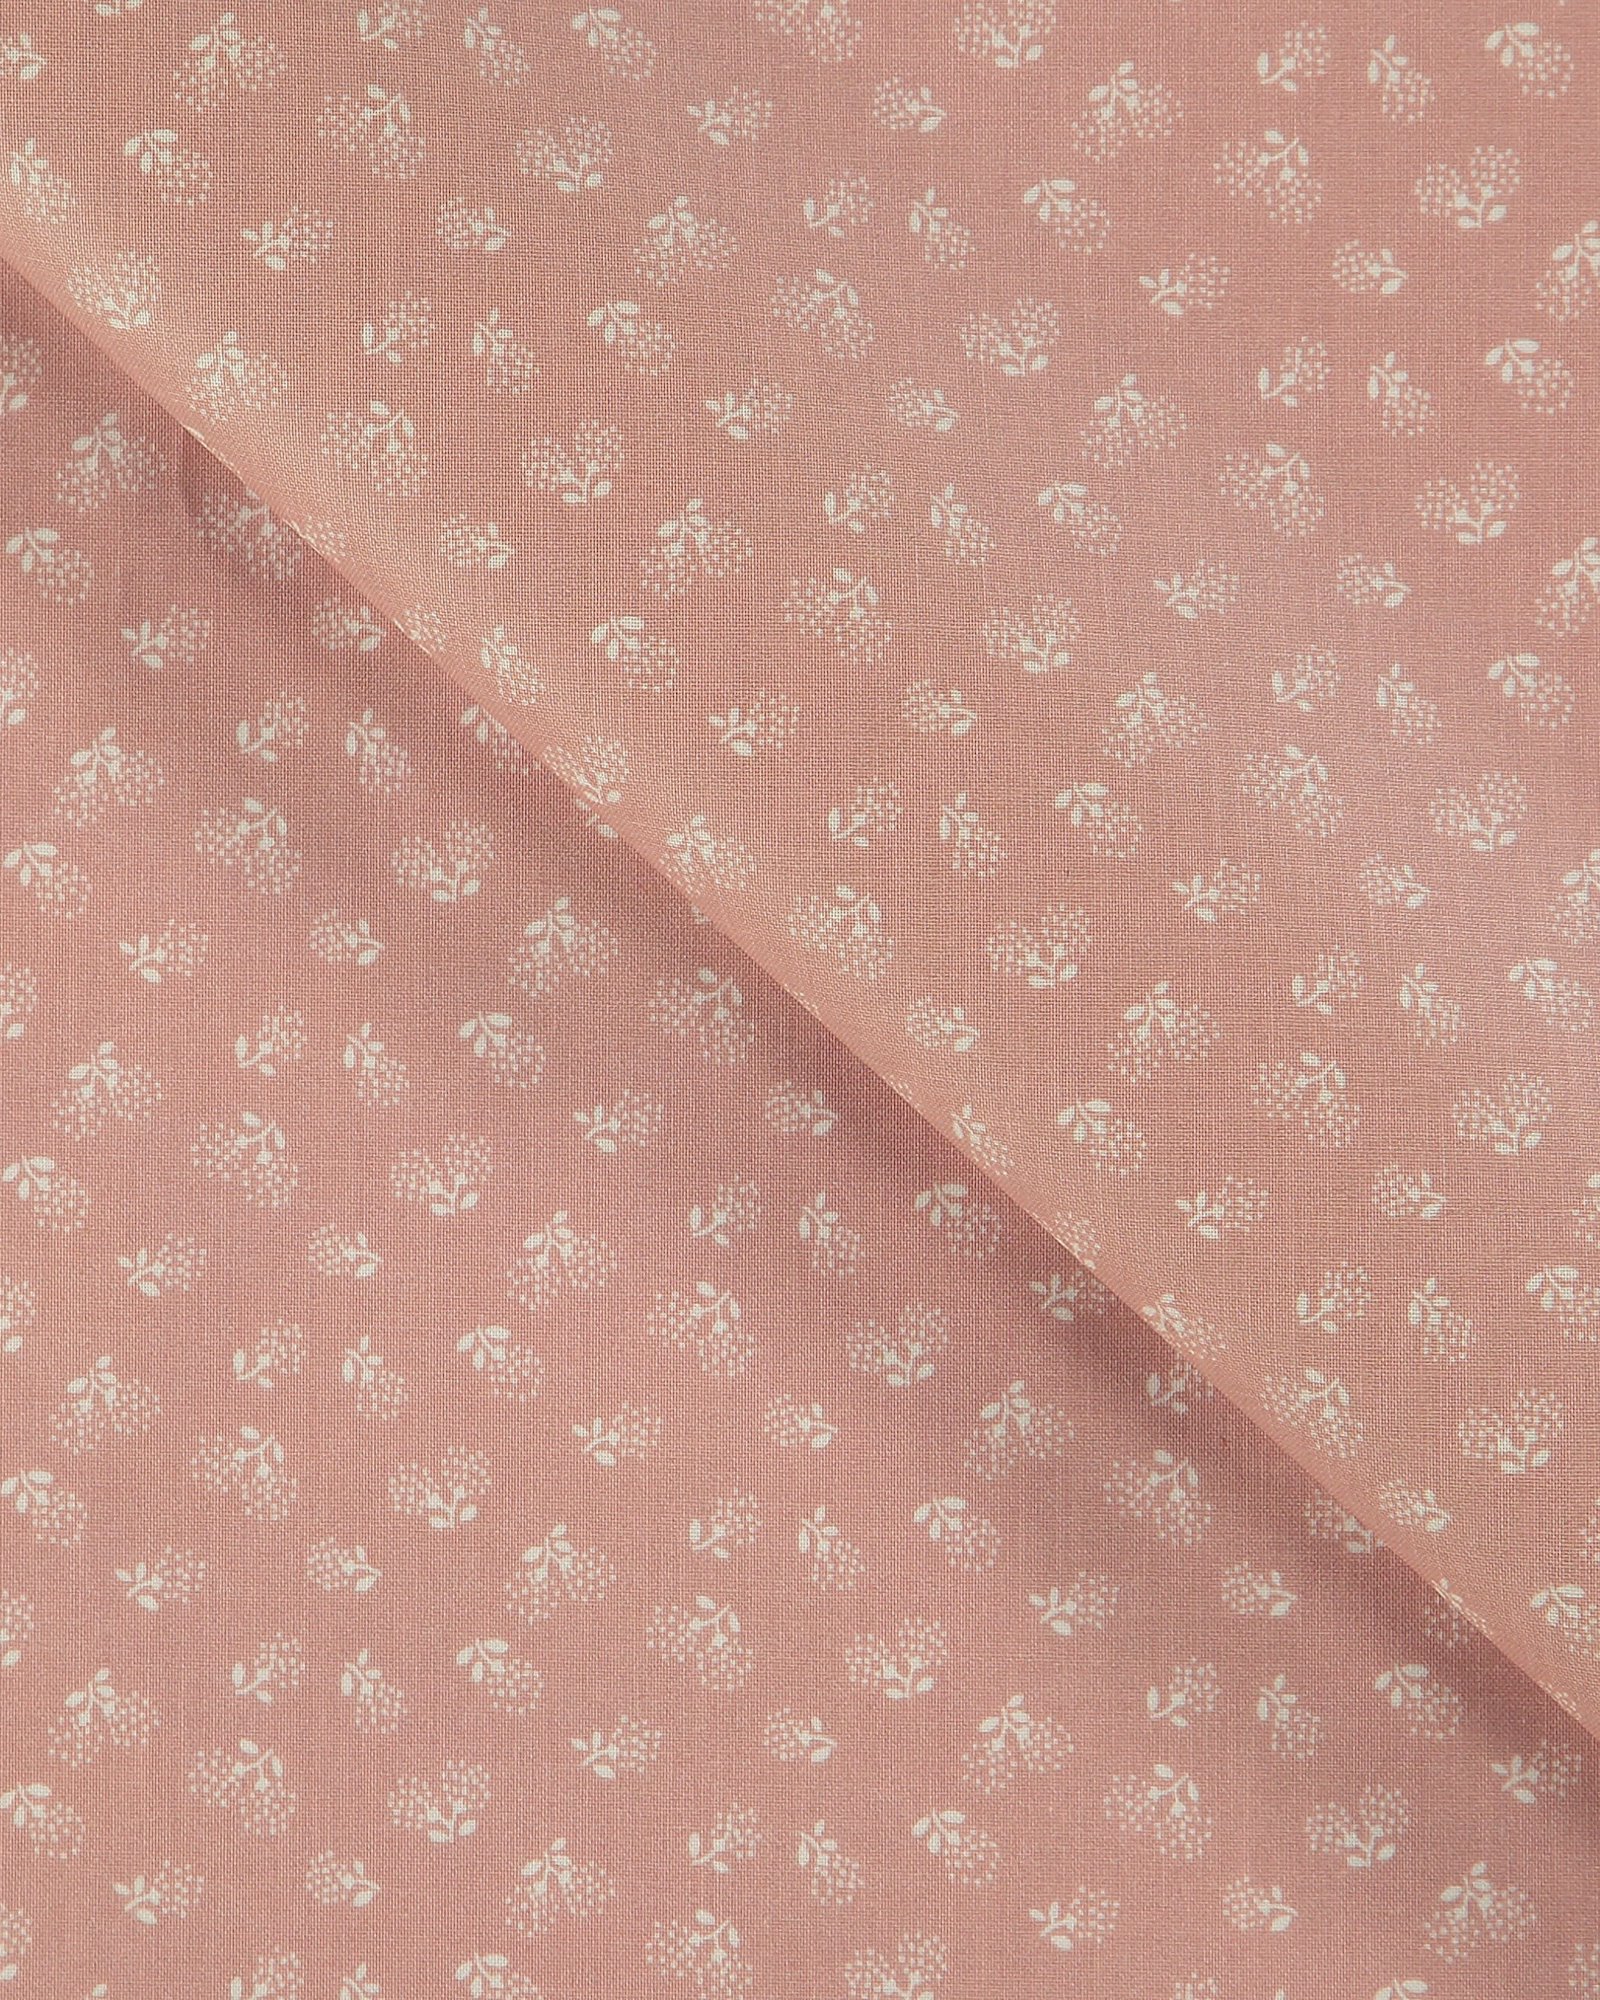 Tekstilvoksdug støvet rosa med blomster 866138_pack